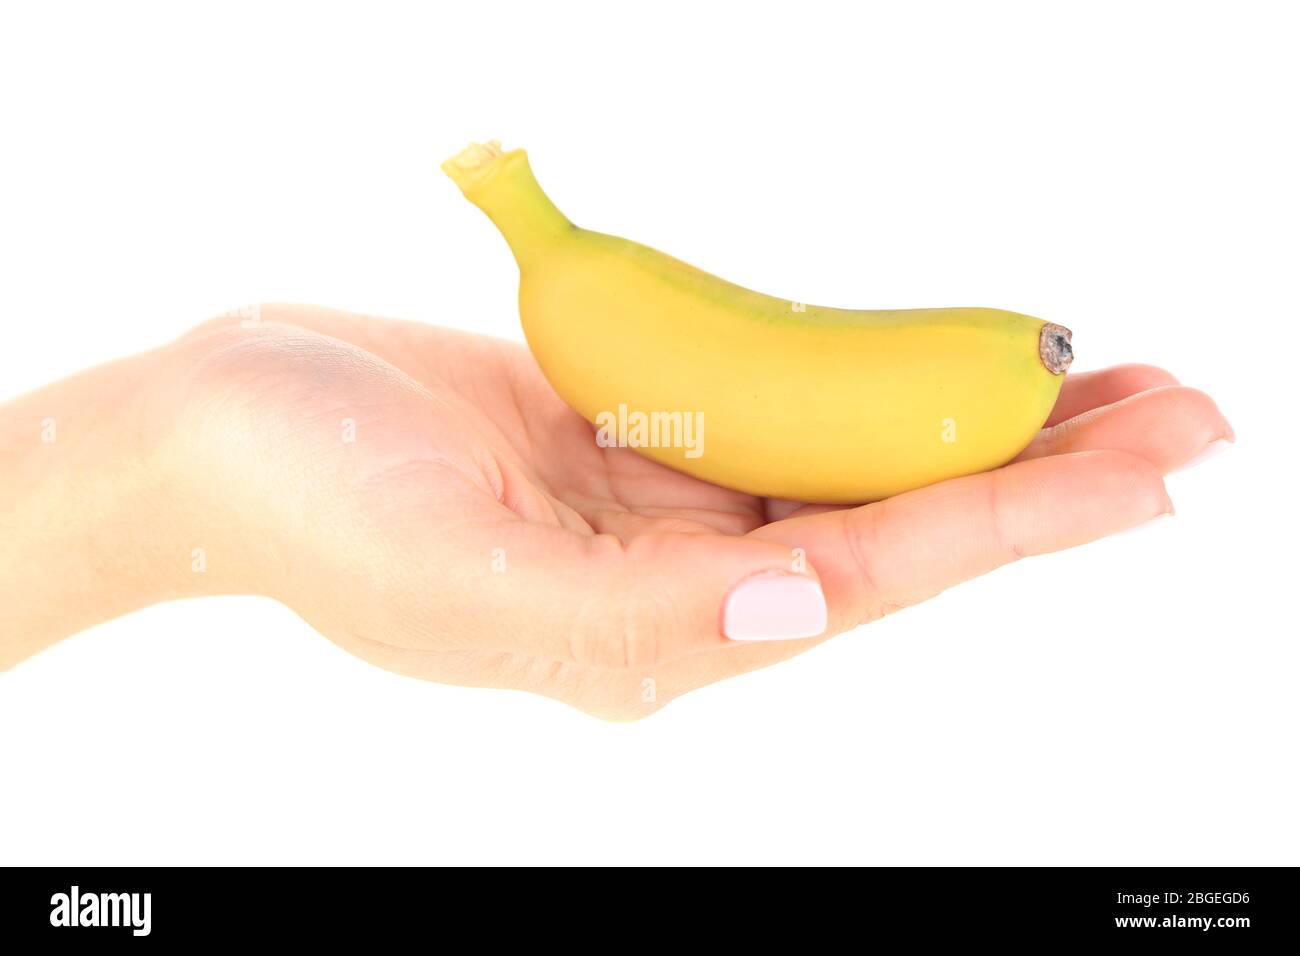 Mini banana immagini e fotografie stock ad alta risoluzione - Alamy